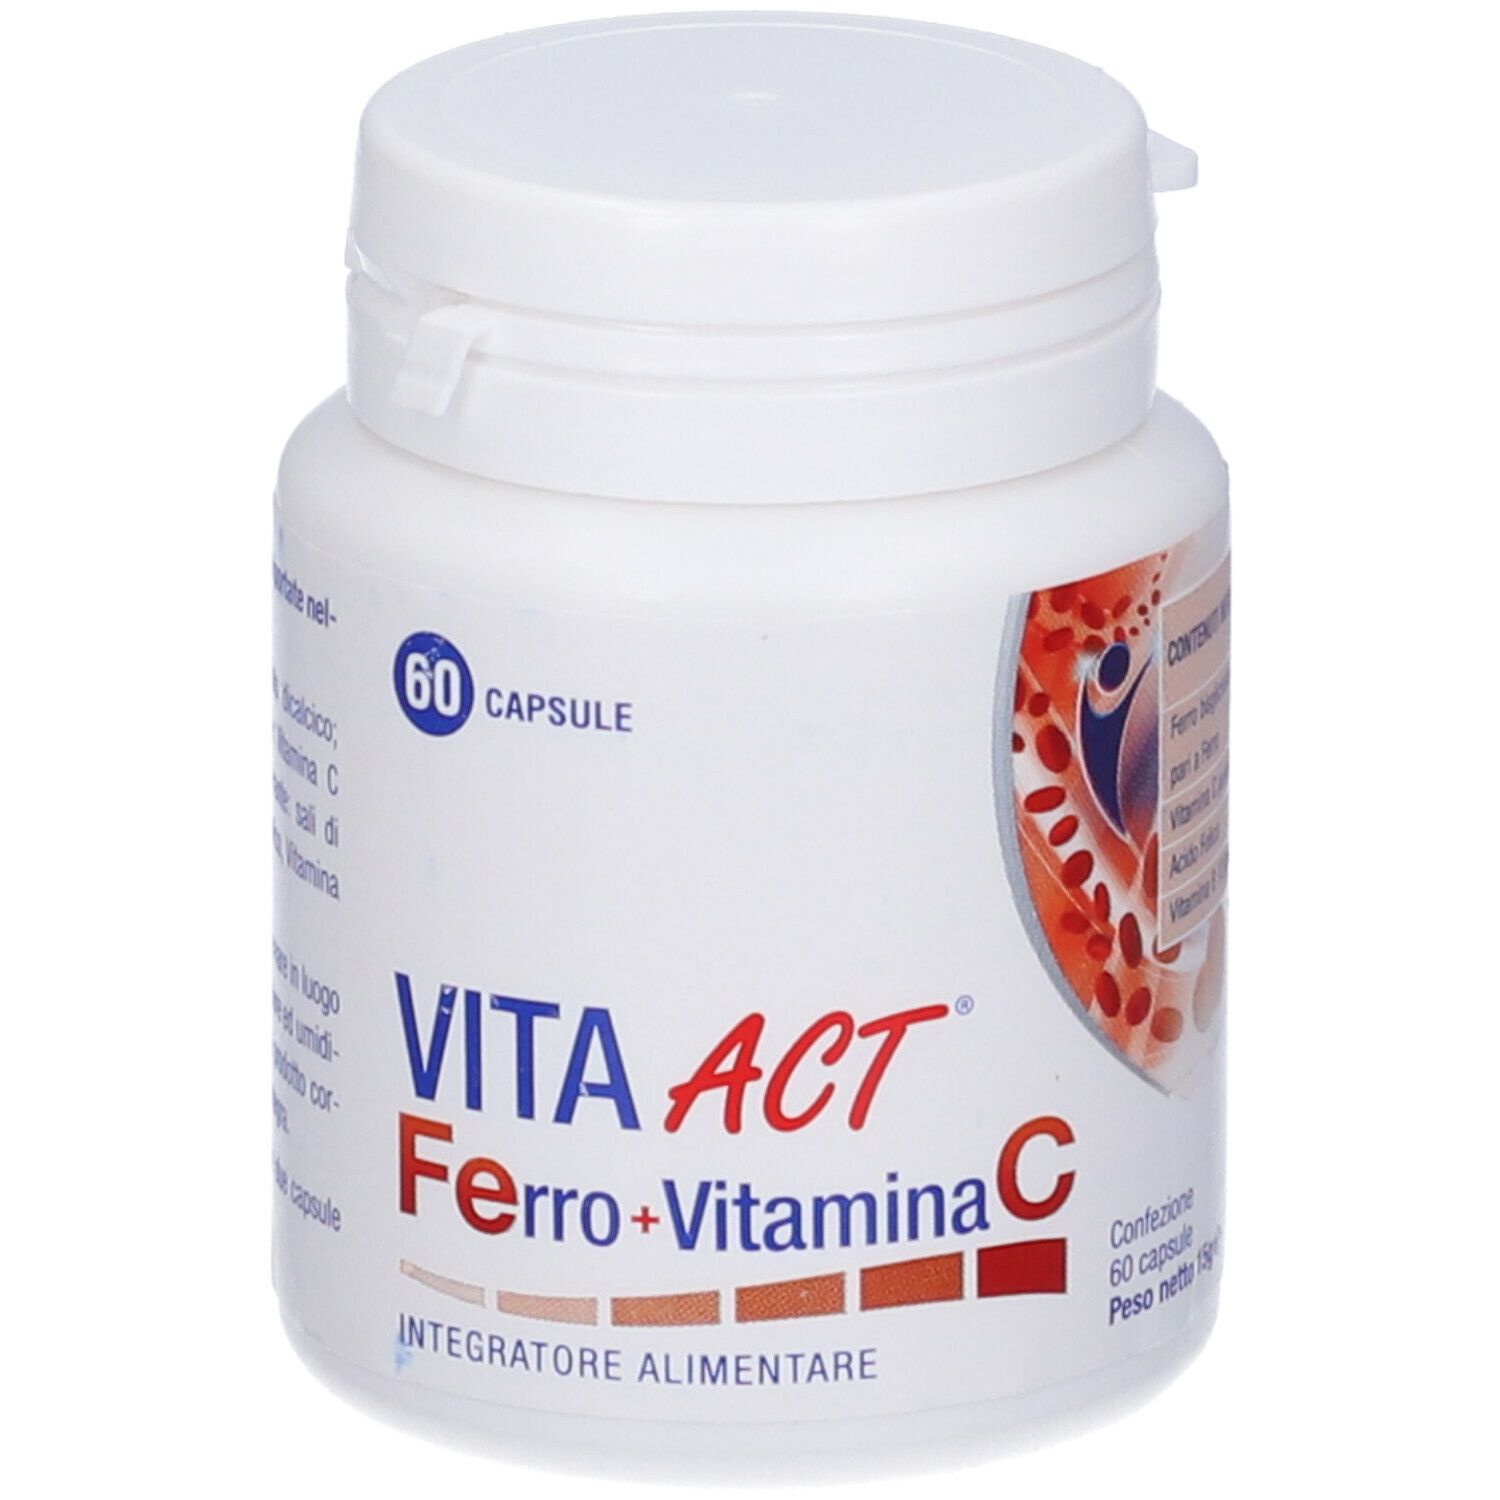 VITA ACT® Ferro + Vitamina C Integratore Alimentare